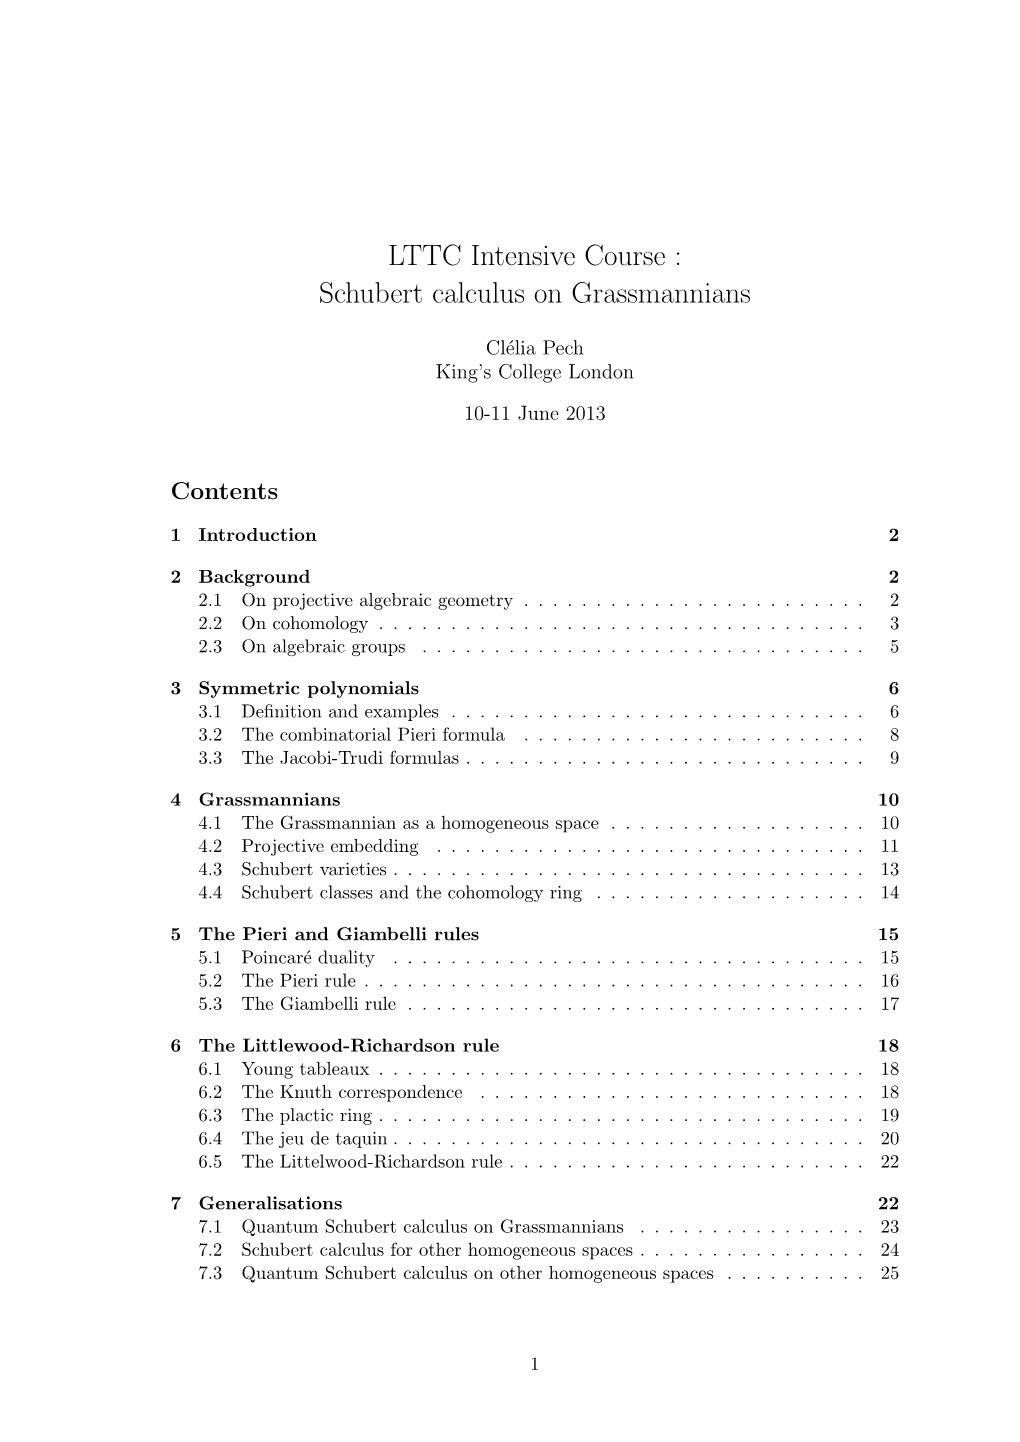 LTTC Intensive Course : Schubert Calculus on Grassmannians